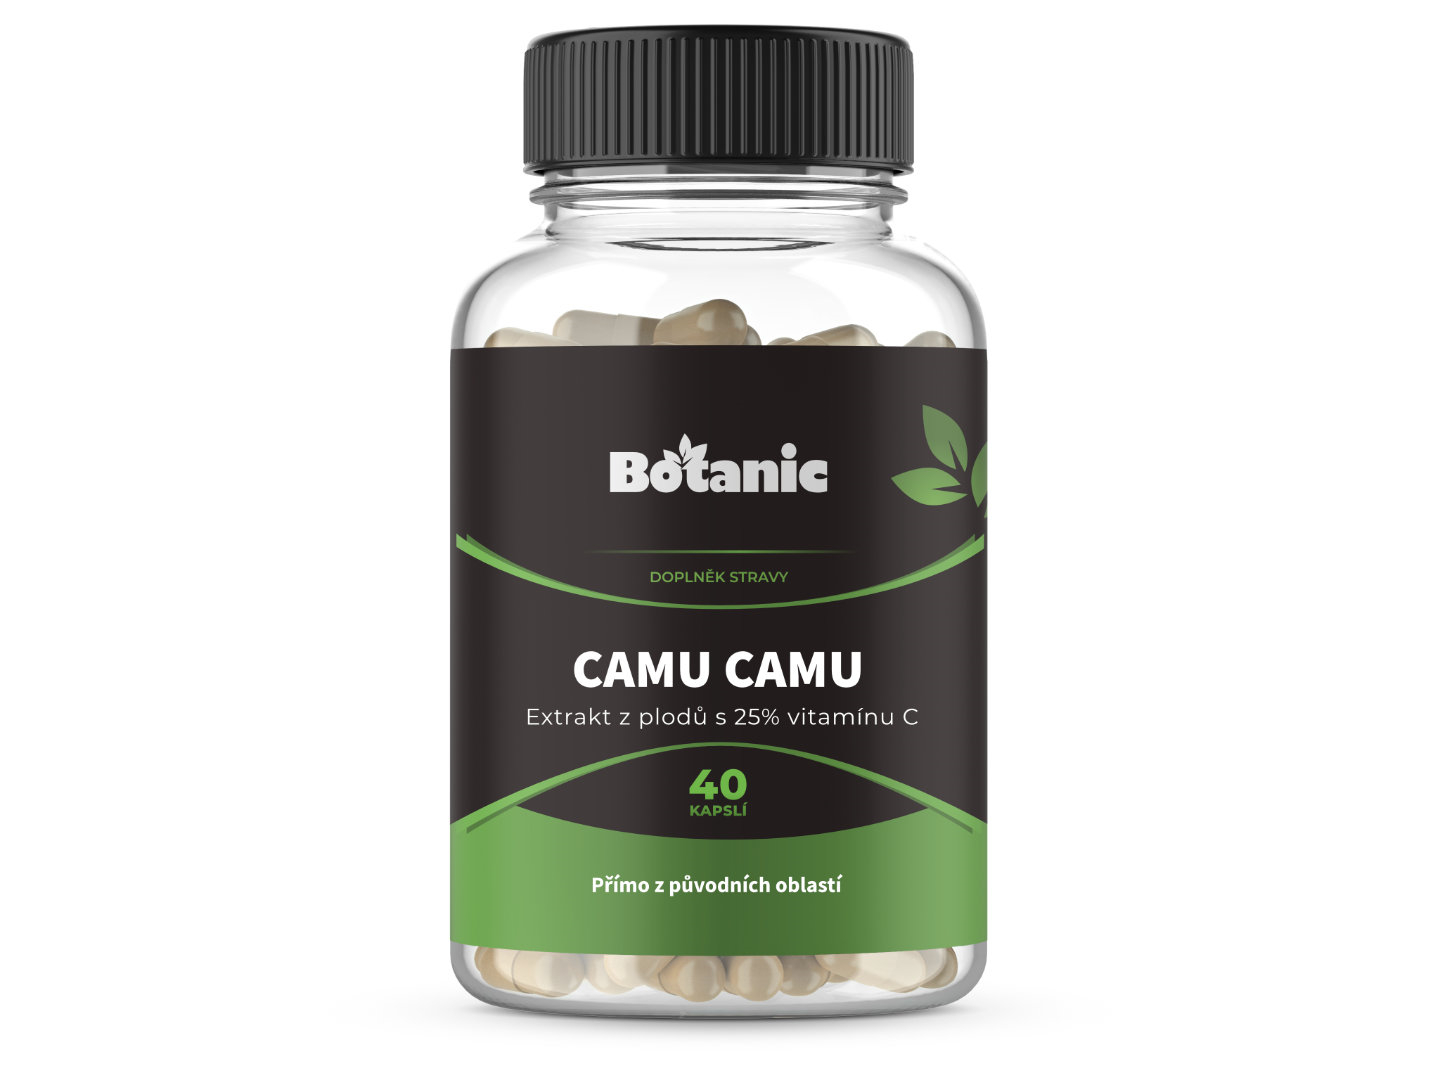 Botanic Camu Camu - Extrakt z plodů s 25% vitamínu C v kapslích 40kap.